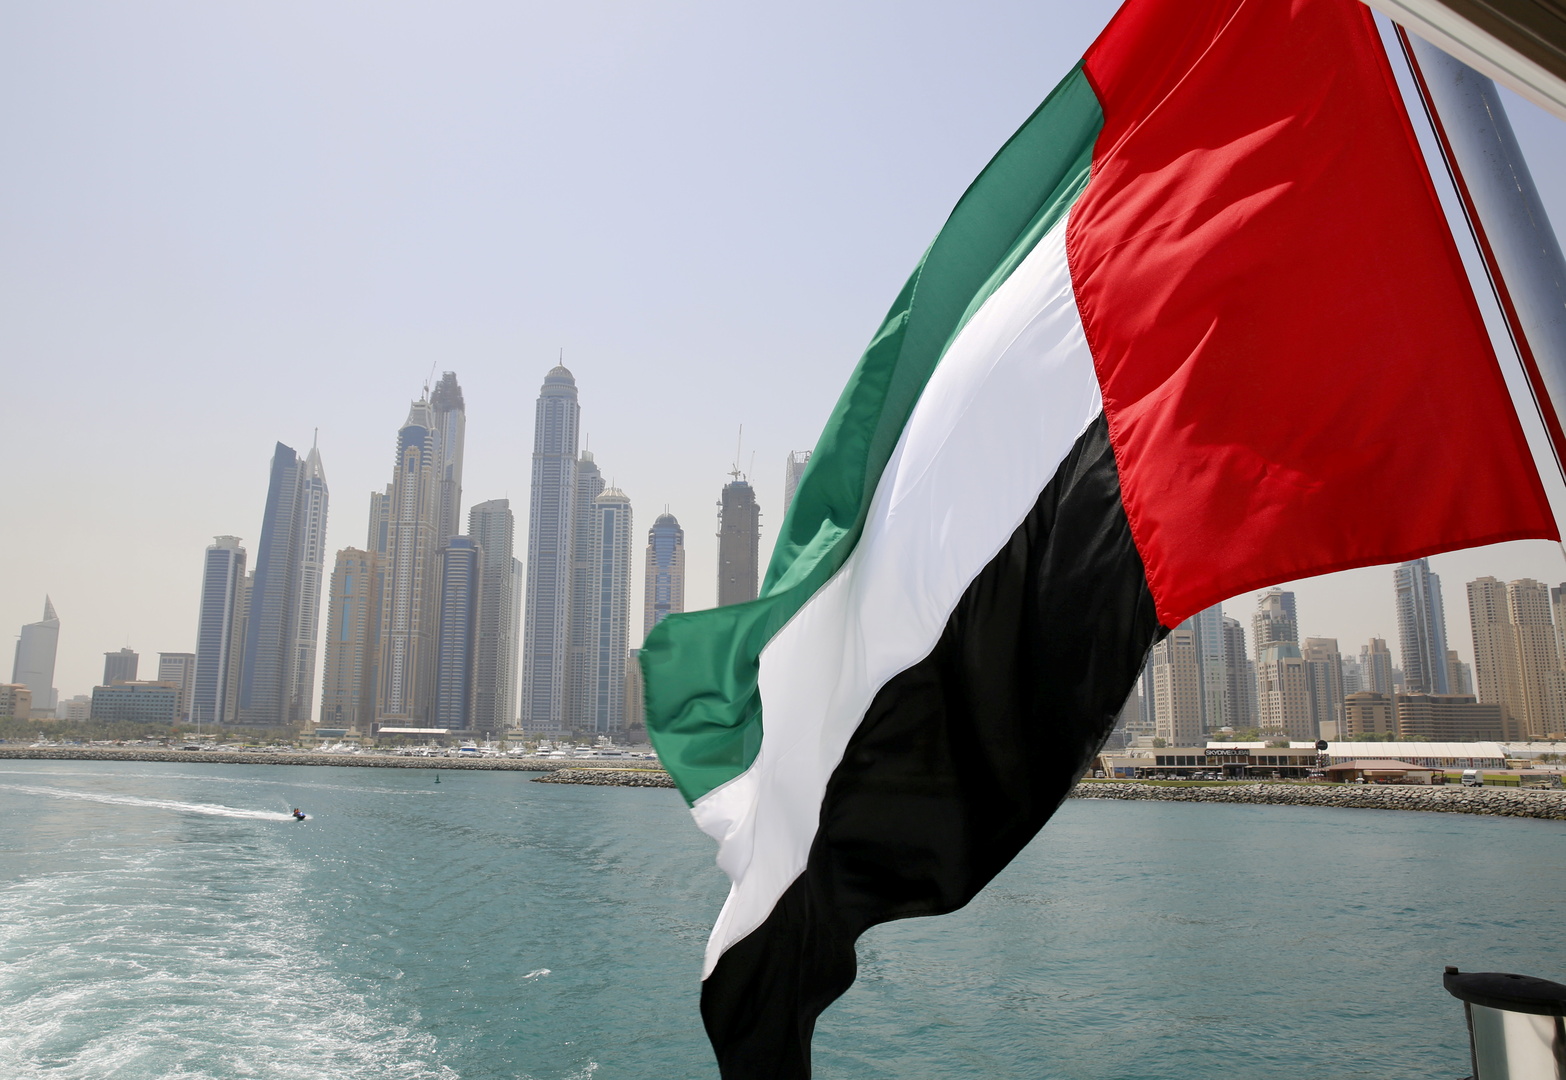 الإمارات.. أحكام مُحتملة بالإعدام ضد عشرات المعتقلين السياسيين وتسريبات خطيرة